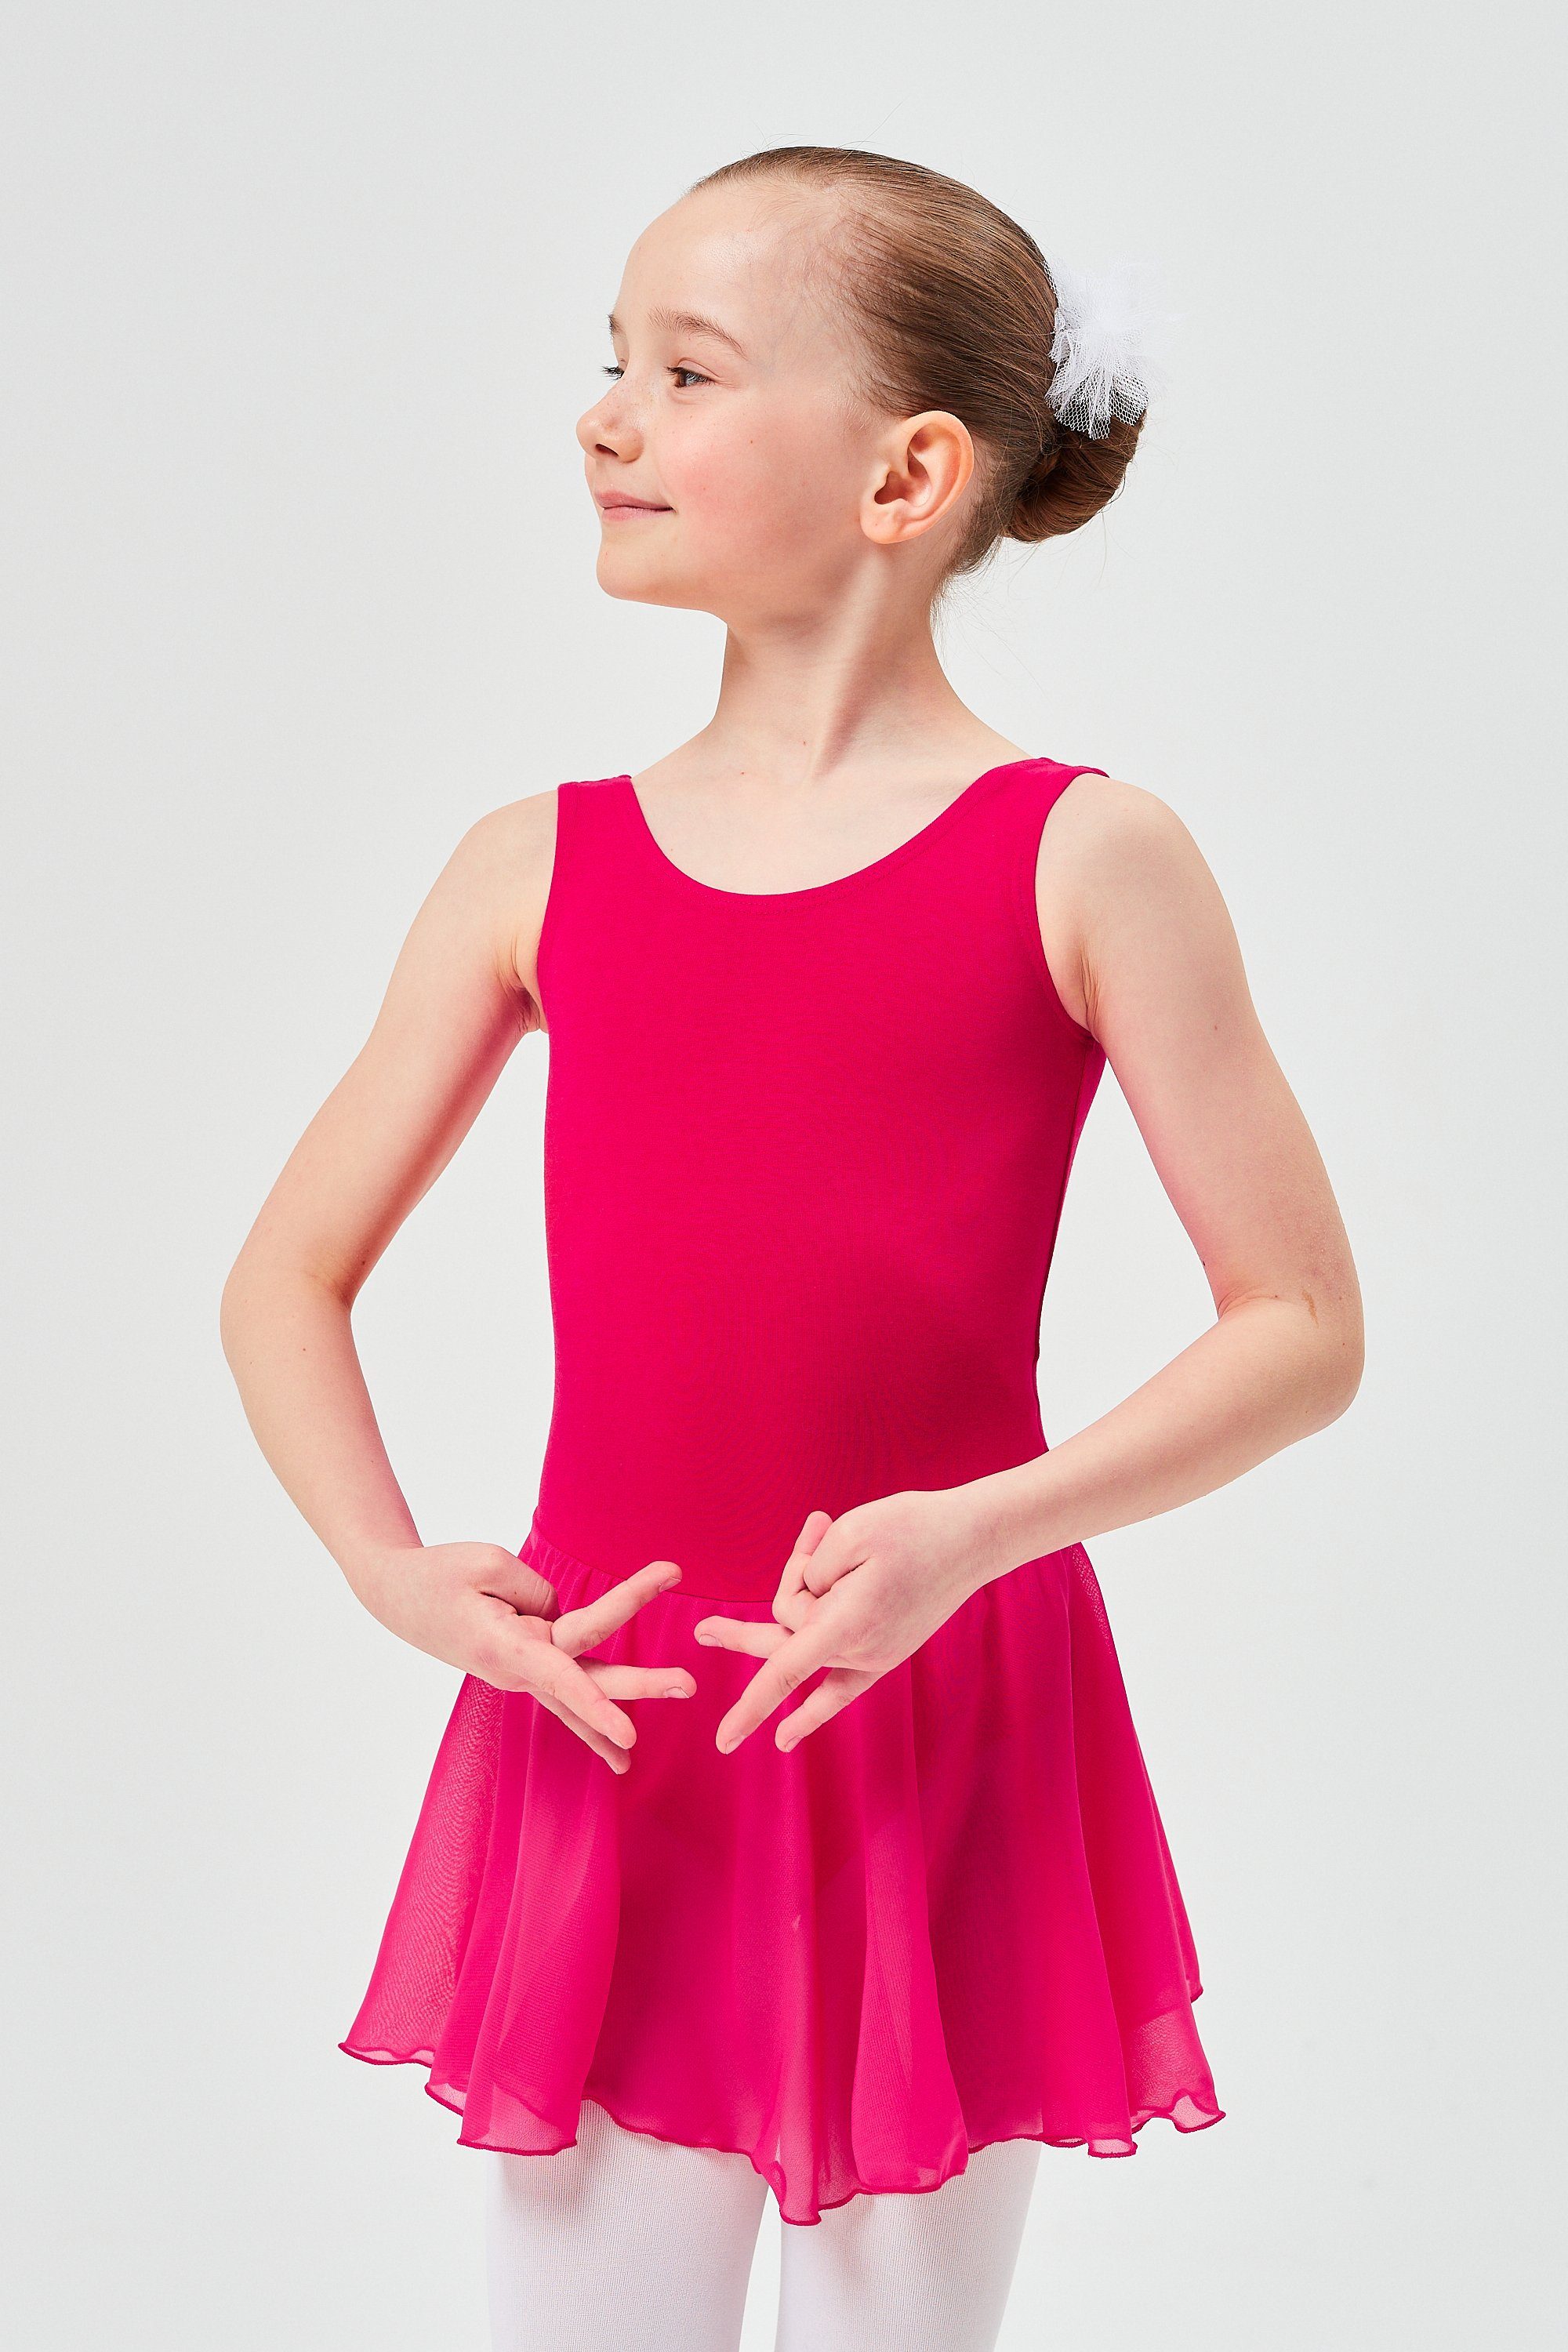 tanzmuster Chiffonkleid Ballett Trikot Minnie mit Chiffon Röckchen Ballettkleid für Mädchen aus wunderbar weichem Baumwollmaterial pink